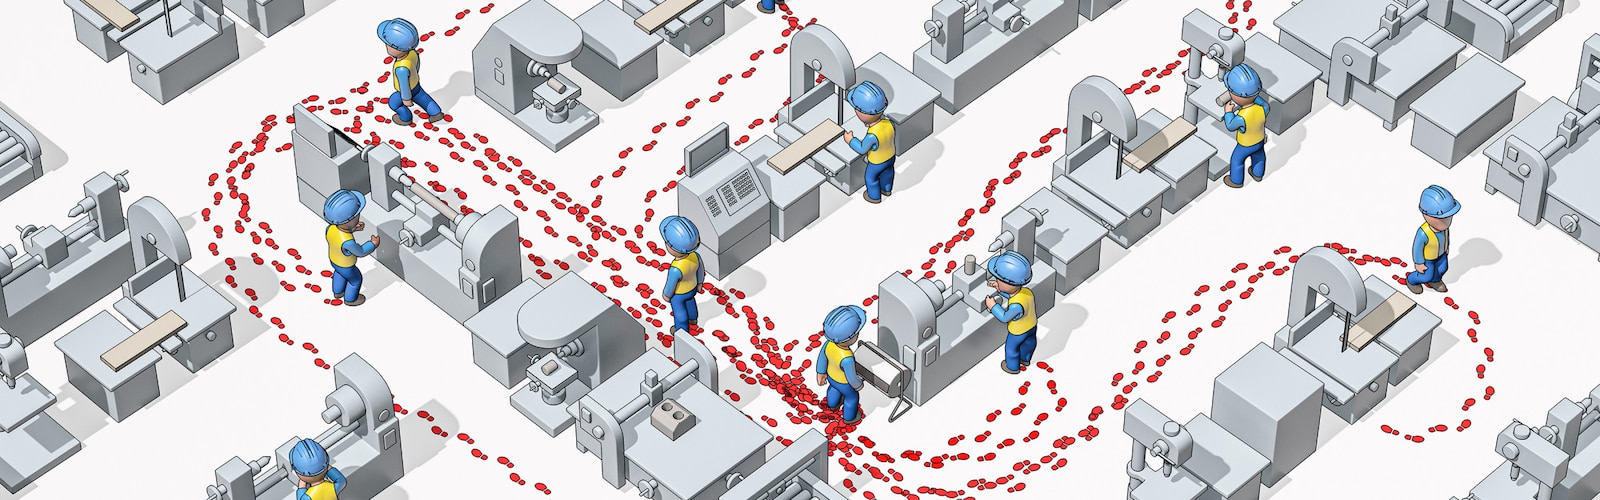 Illustrazione di operai con elmetti di sicurezza, visti dall’alto di un capannone industriale, le cui impronte mostrano gli spostamenti effettuati.